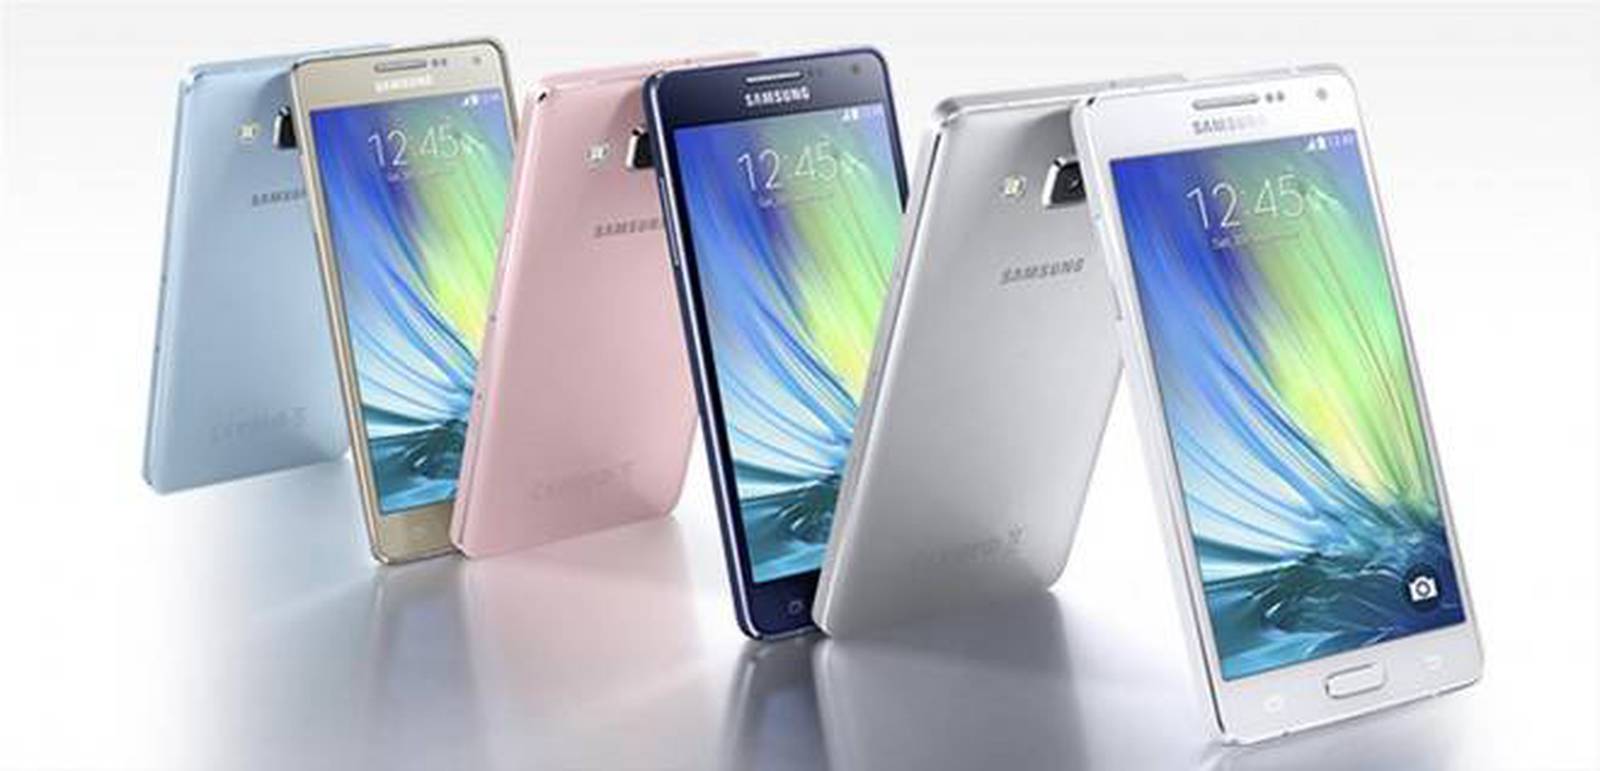 Samsung tiene el récord de más selfies tomadas con el A3 y A5